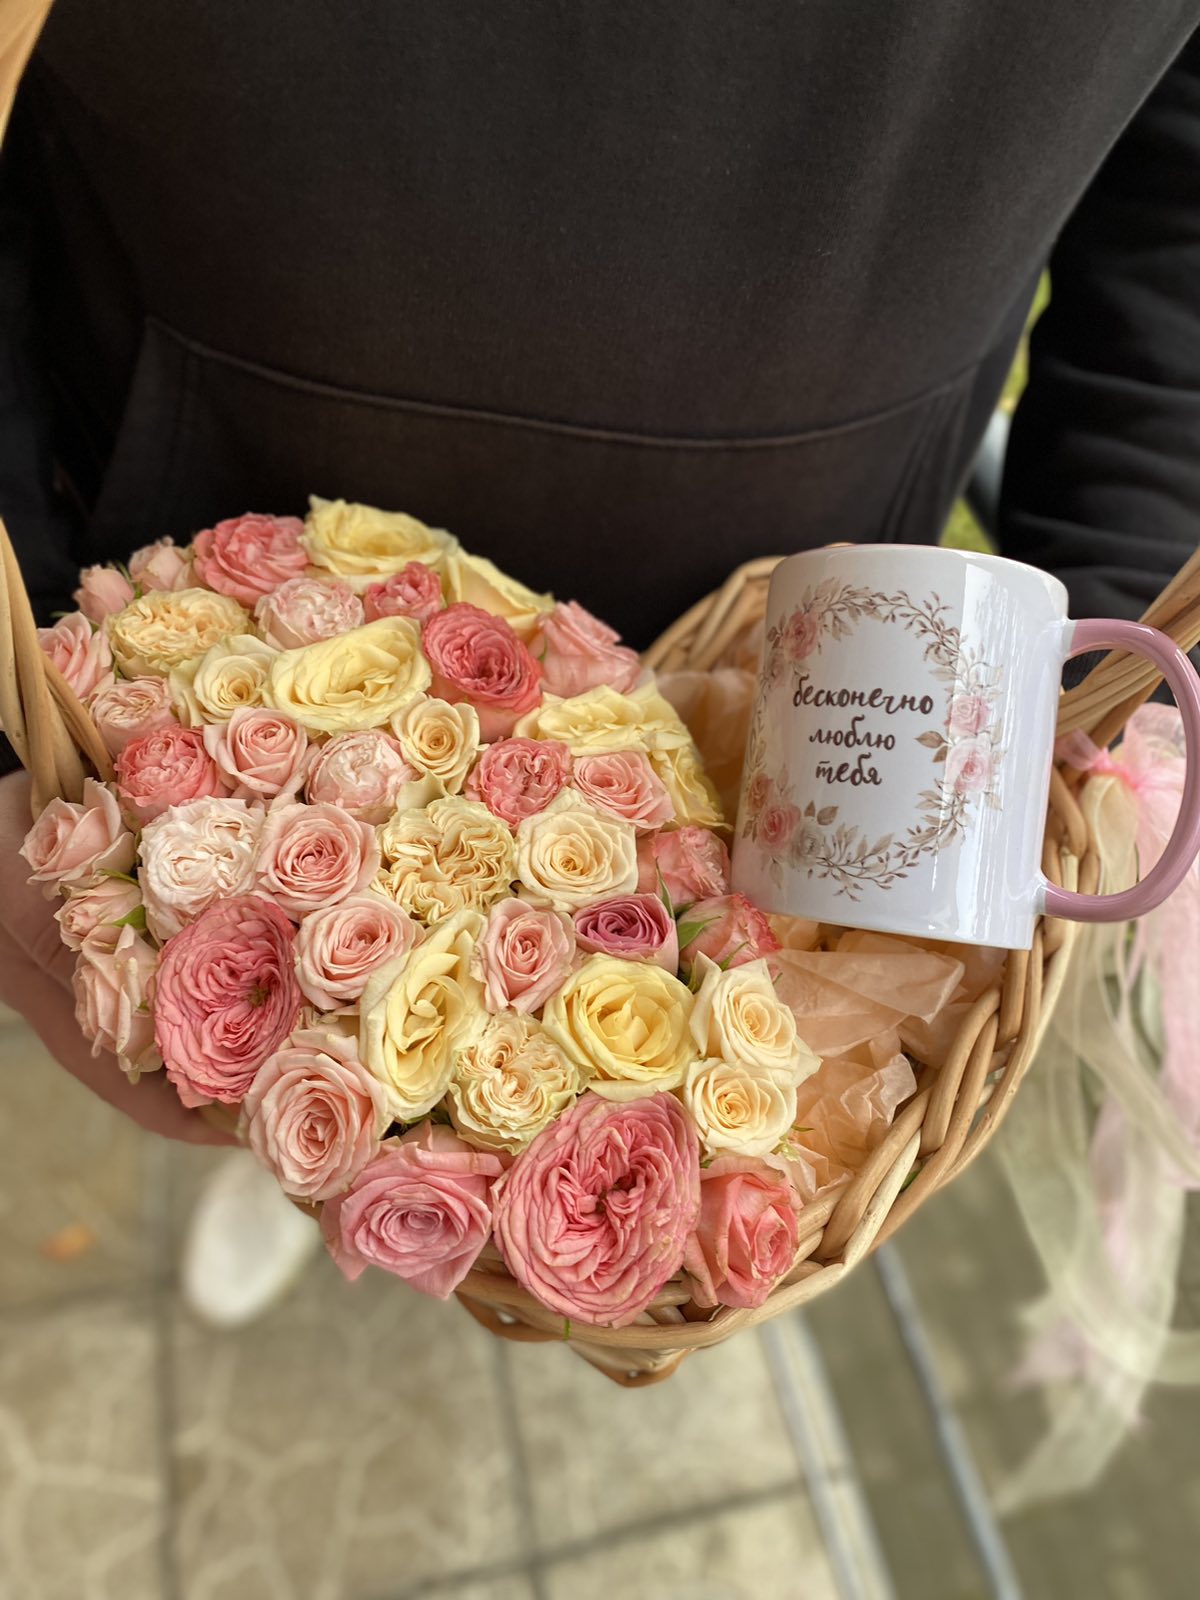 Интернет-магазин цветов Вам Букет в Могилеве